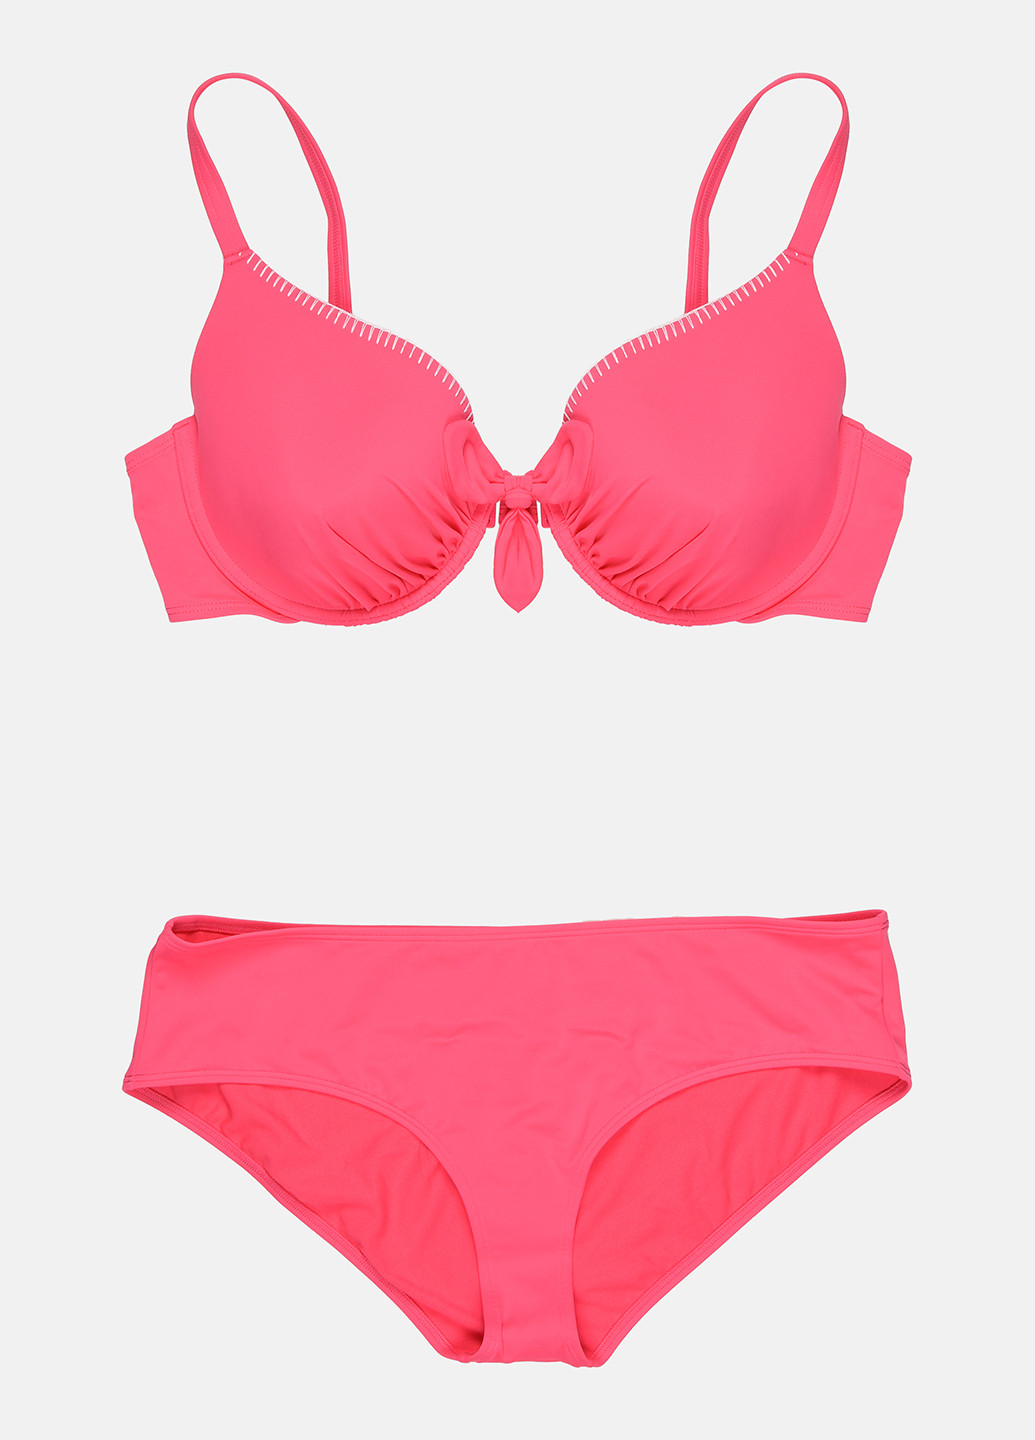 Кислотно-розовый летний купальник (лиф, трусы) раздельный C&A